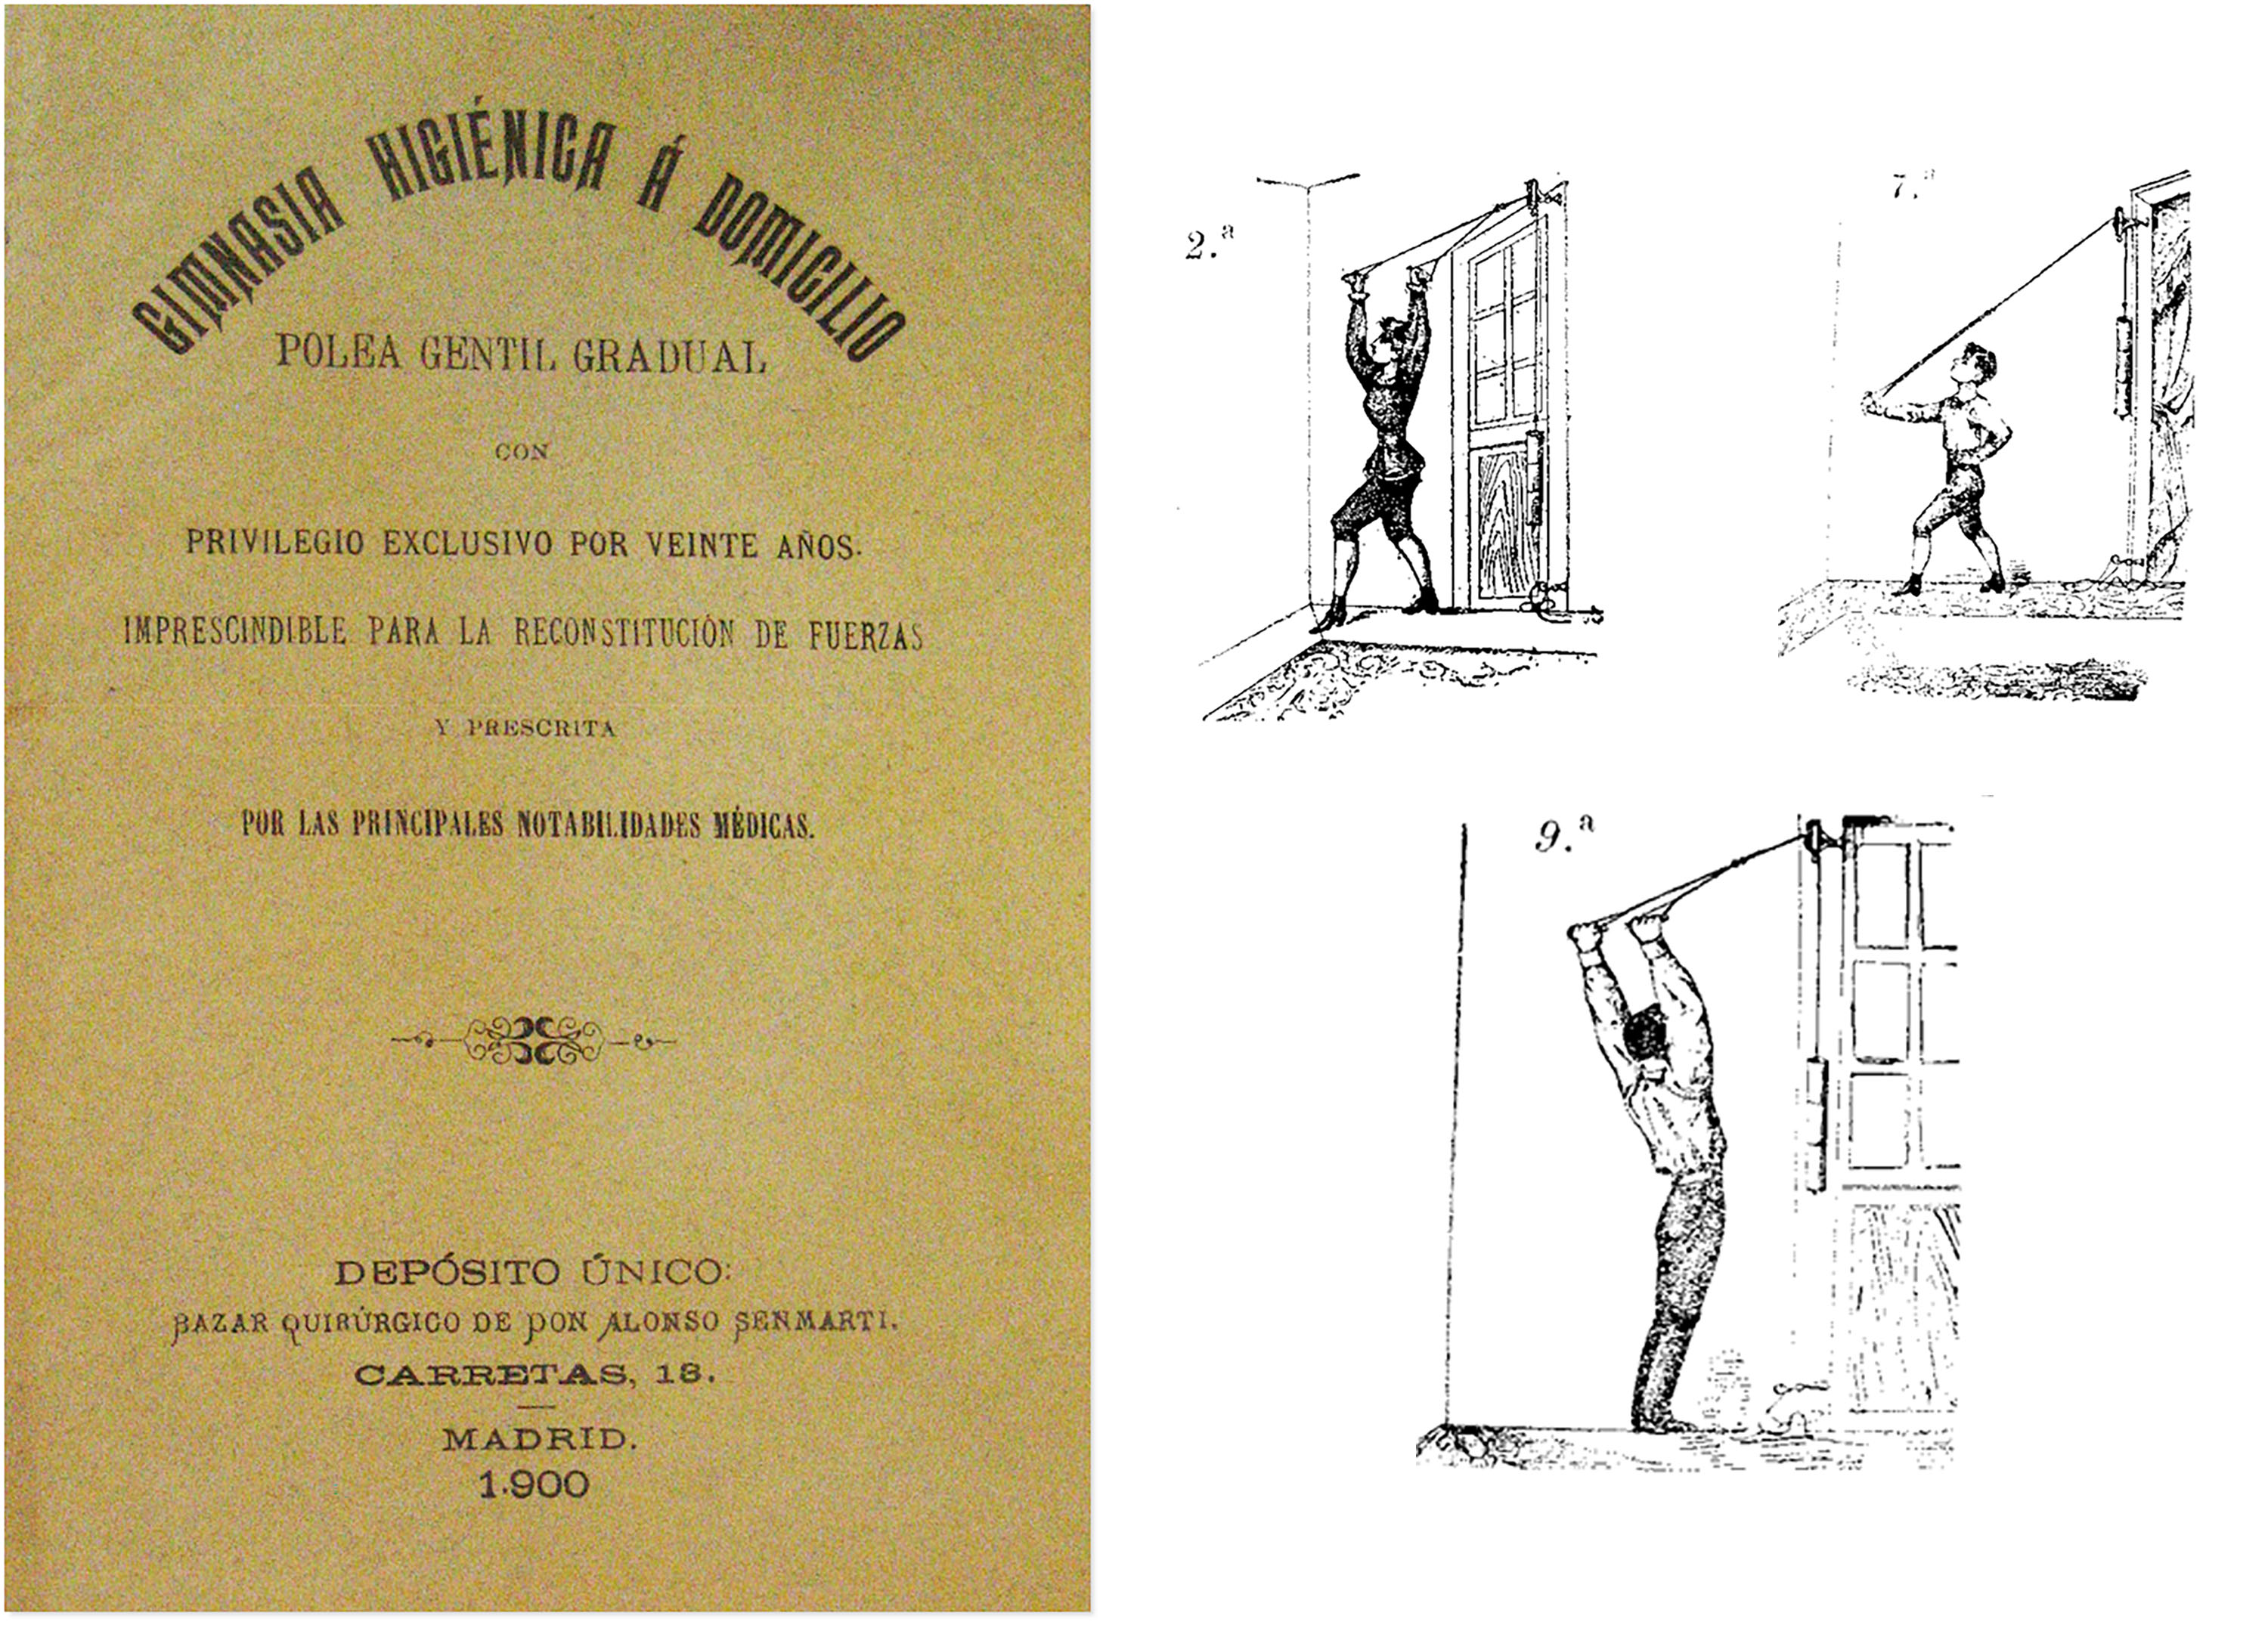 Gimnasia higiénica á domicilio, polea gentil gradual (1900)